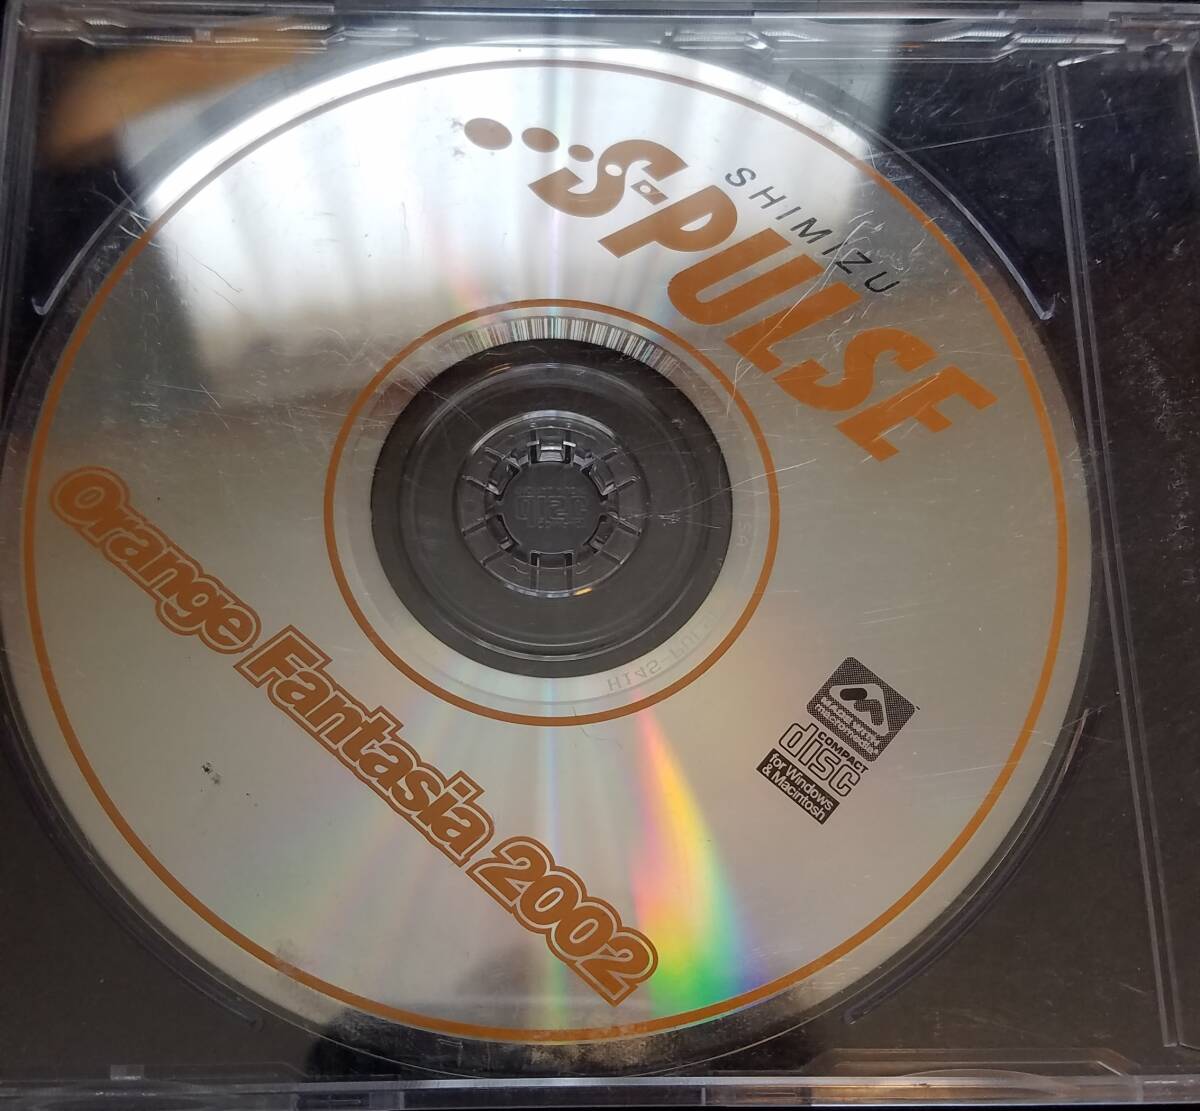 清水エスパルス オフィシャルイヤーブック 2002 付録CDのみ orange fantasia 2002の画像1